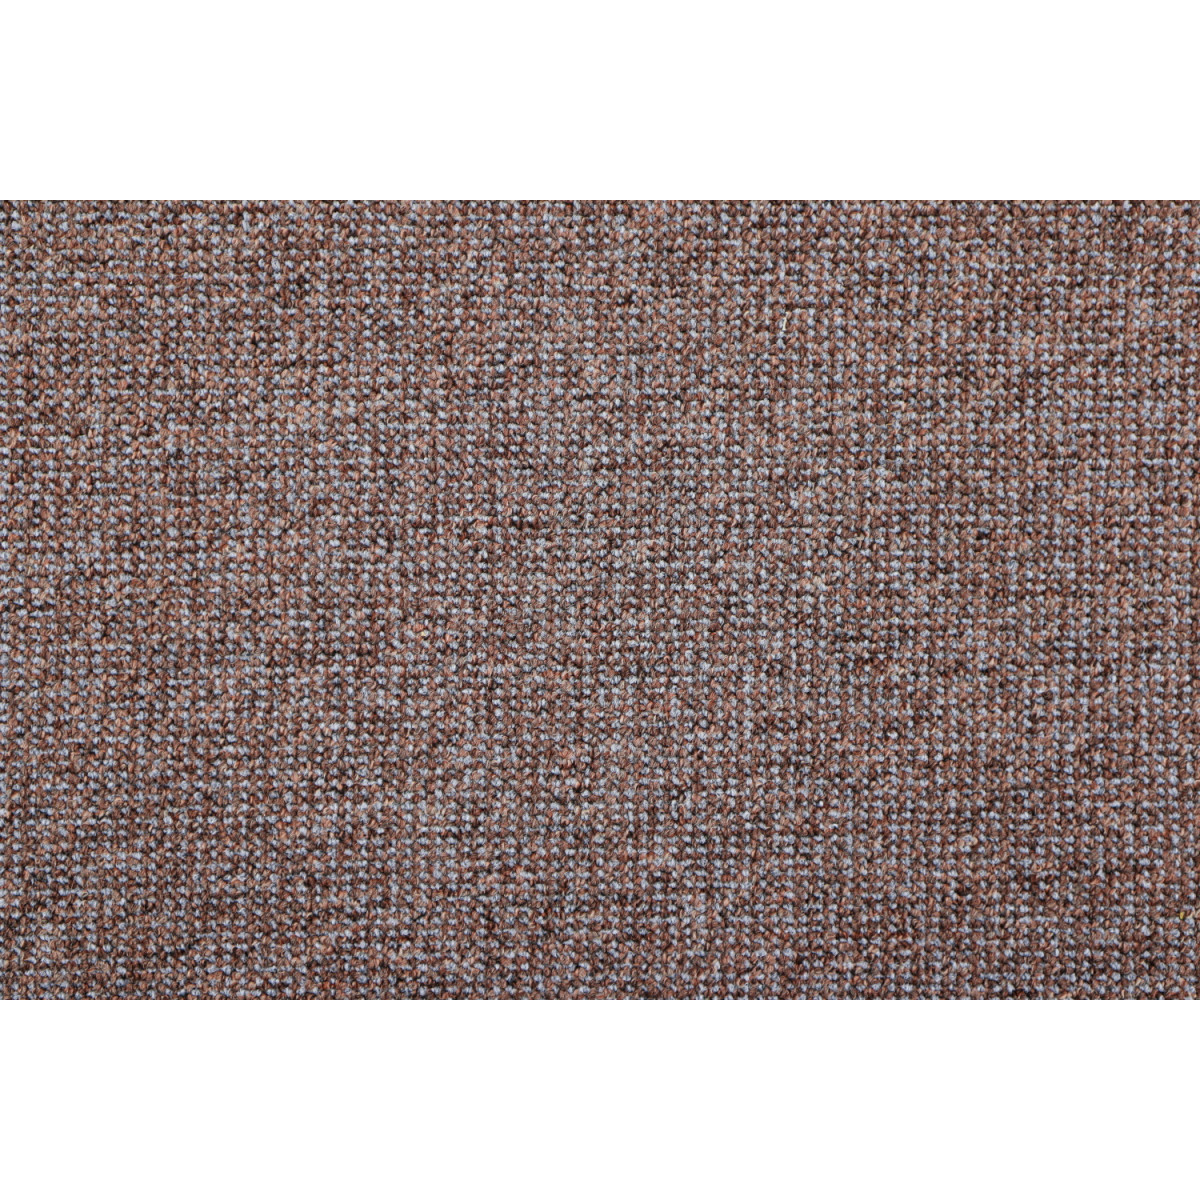 AKCIA: 160x160 cm Metrážny koberec Lion 16 - neúčtujeme odrezky z role!